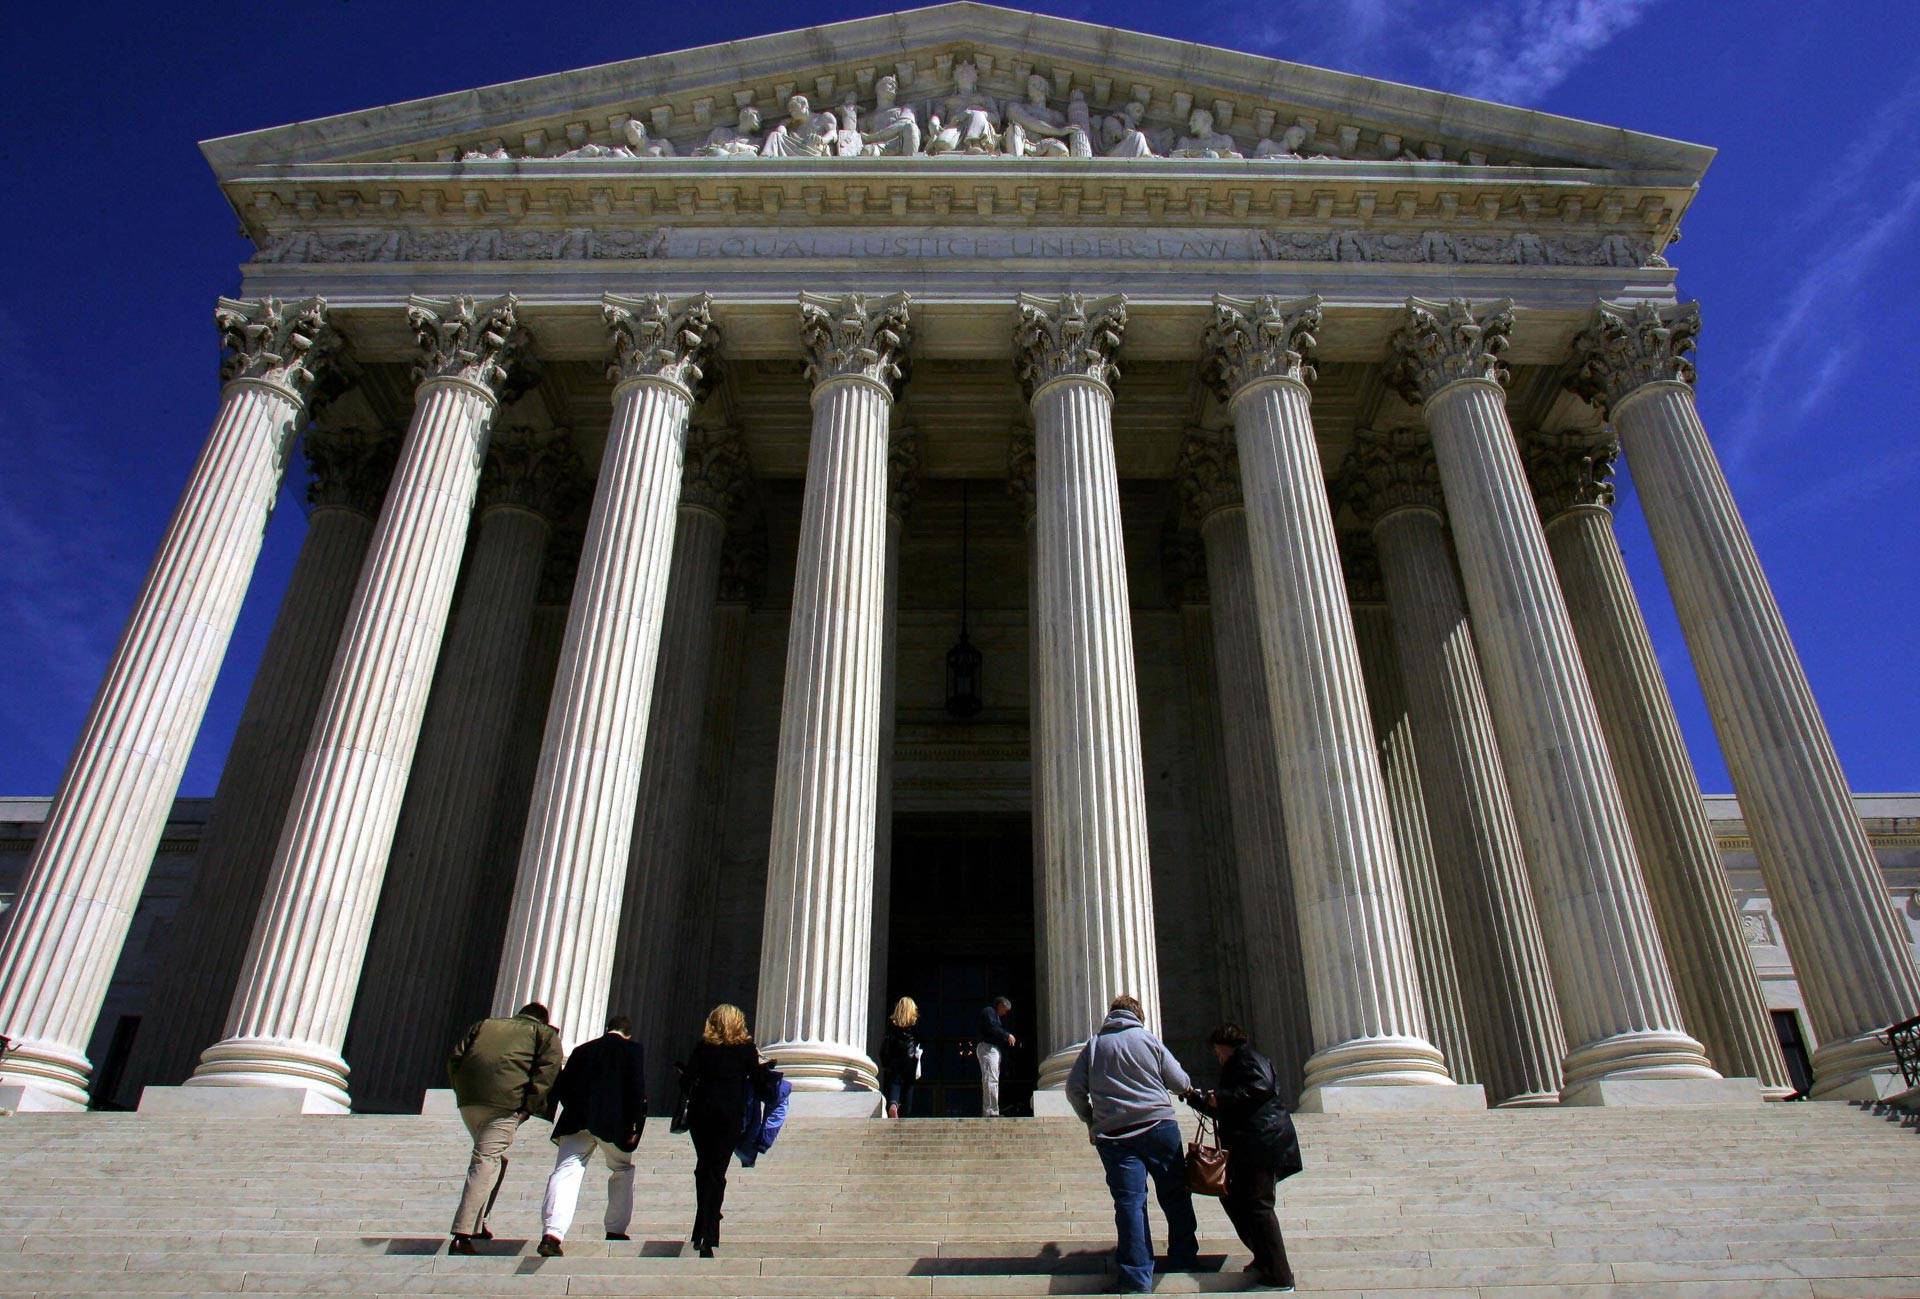 The U.S. Supreme Court building in Washington, D.C. Paul J. Richards/AFP-Getty Images